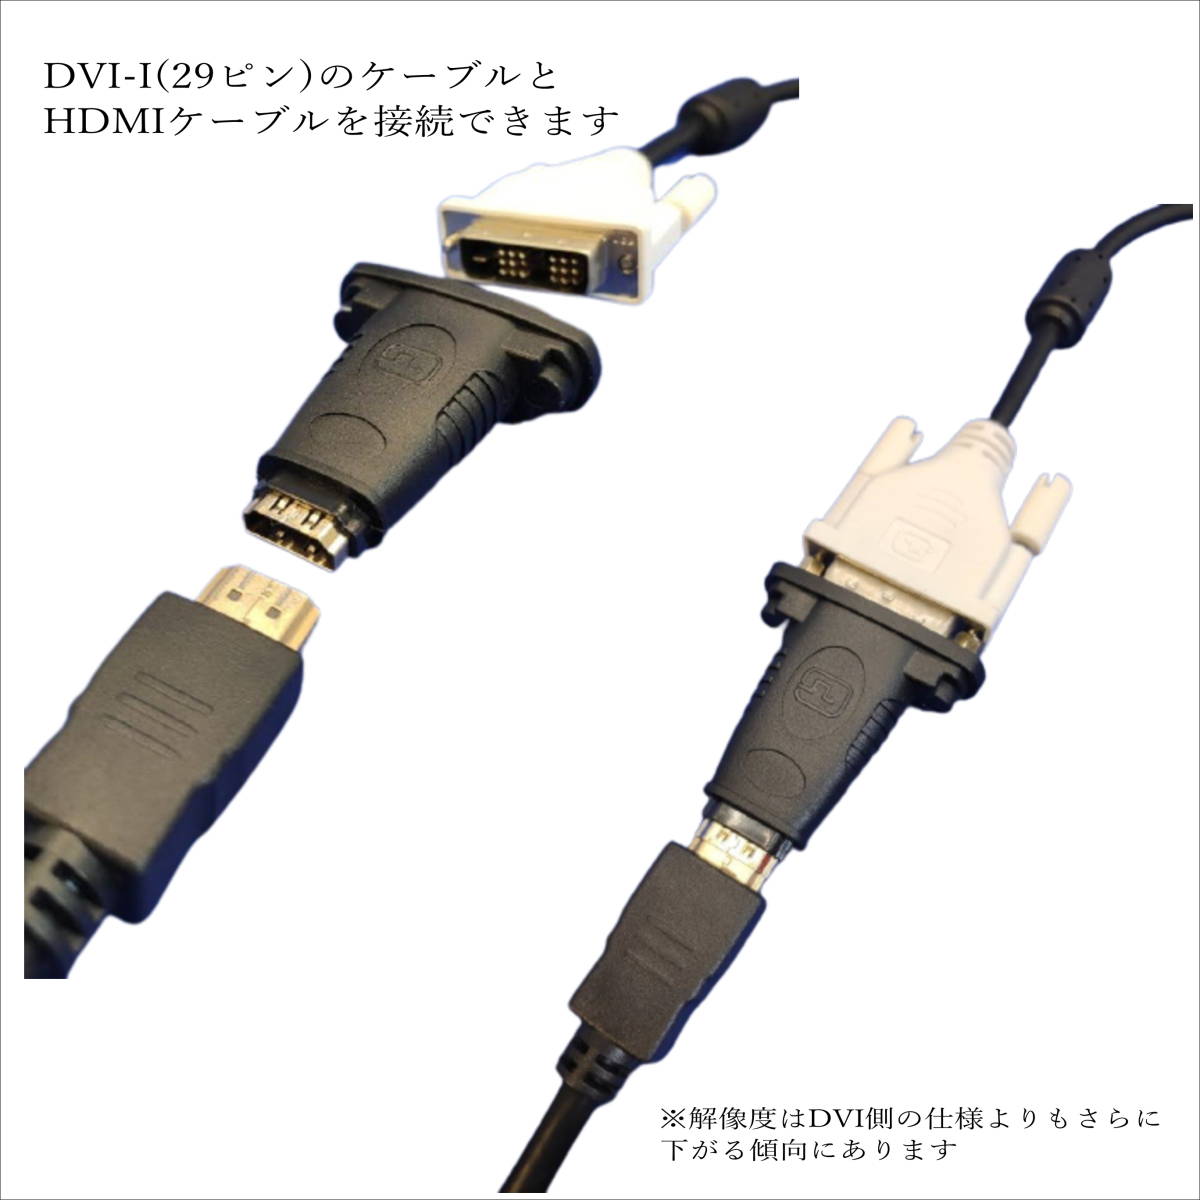 □DVI-I29ピン(メス) →HDMI A(メス) モニタ変換アダプタ DVIケーブルにHDMIケーブルを接続します A29-FF 【送料無料】